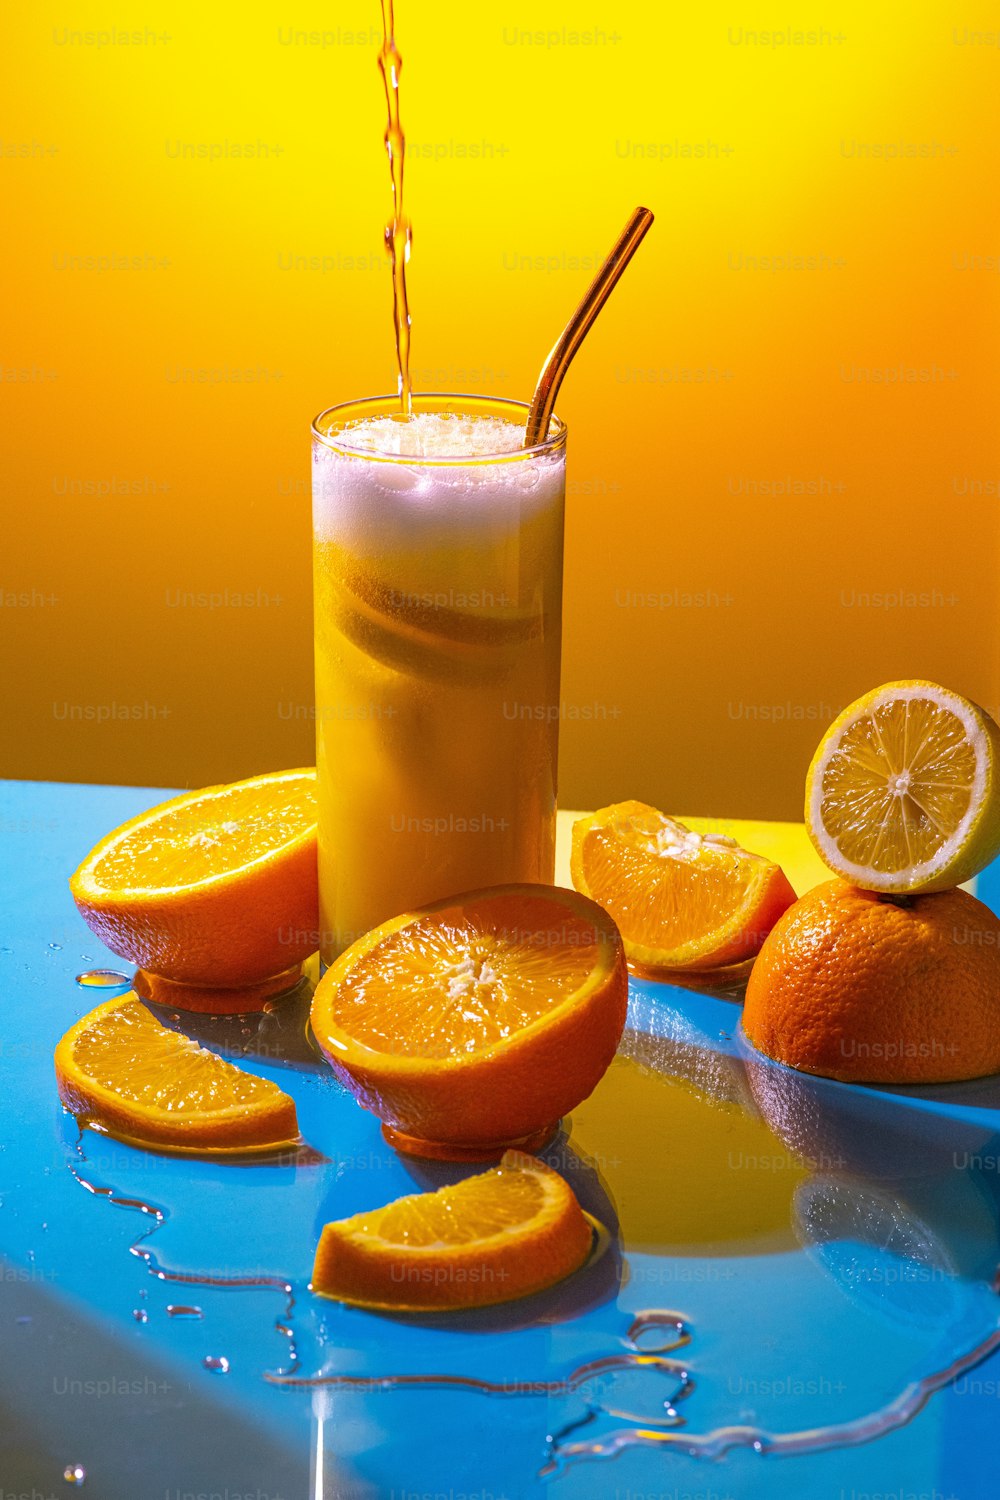 얇게 썬 오렌지가��있는 테이블에 오렌지 주스 한 잔